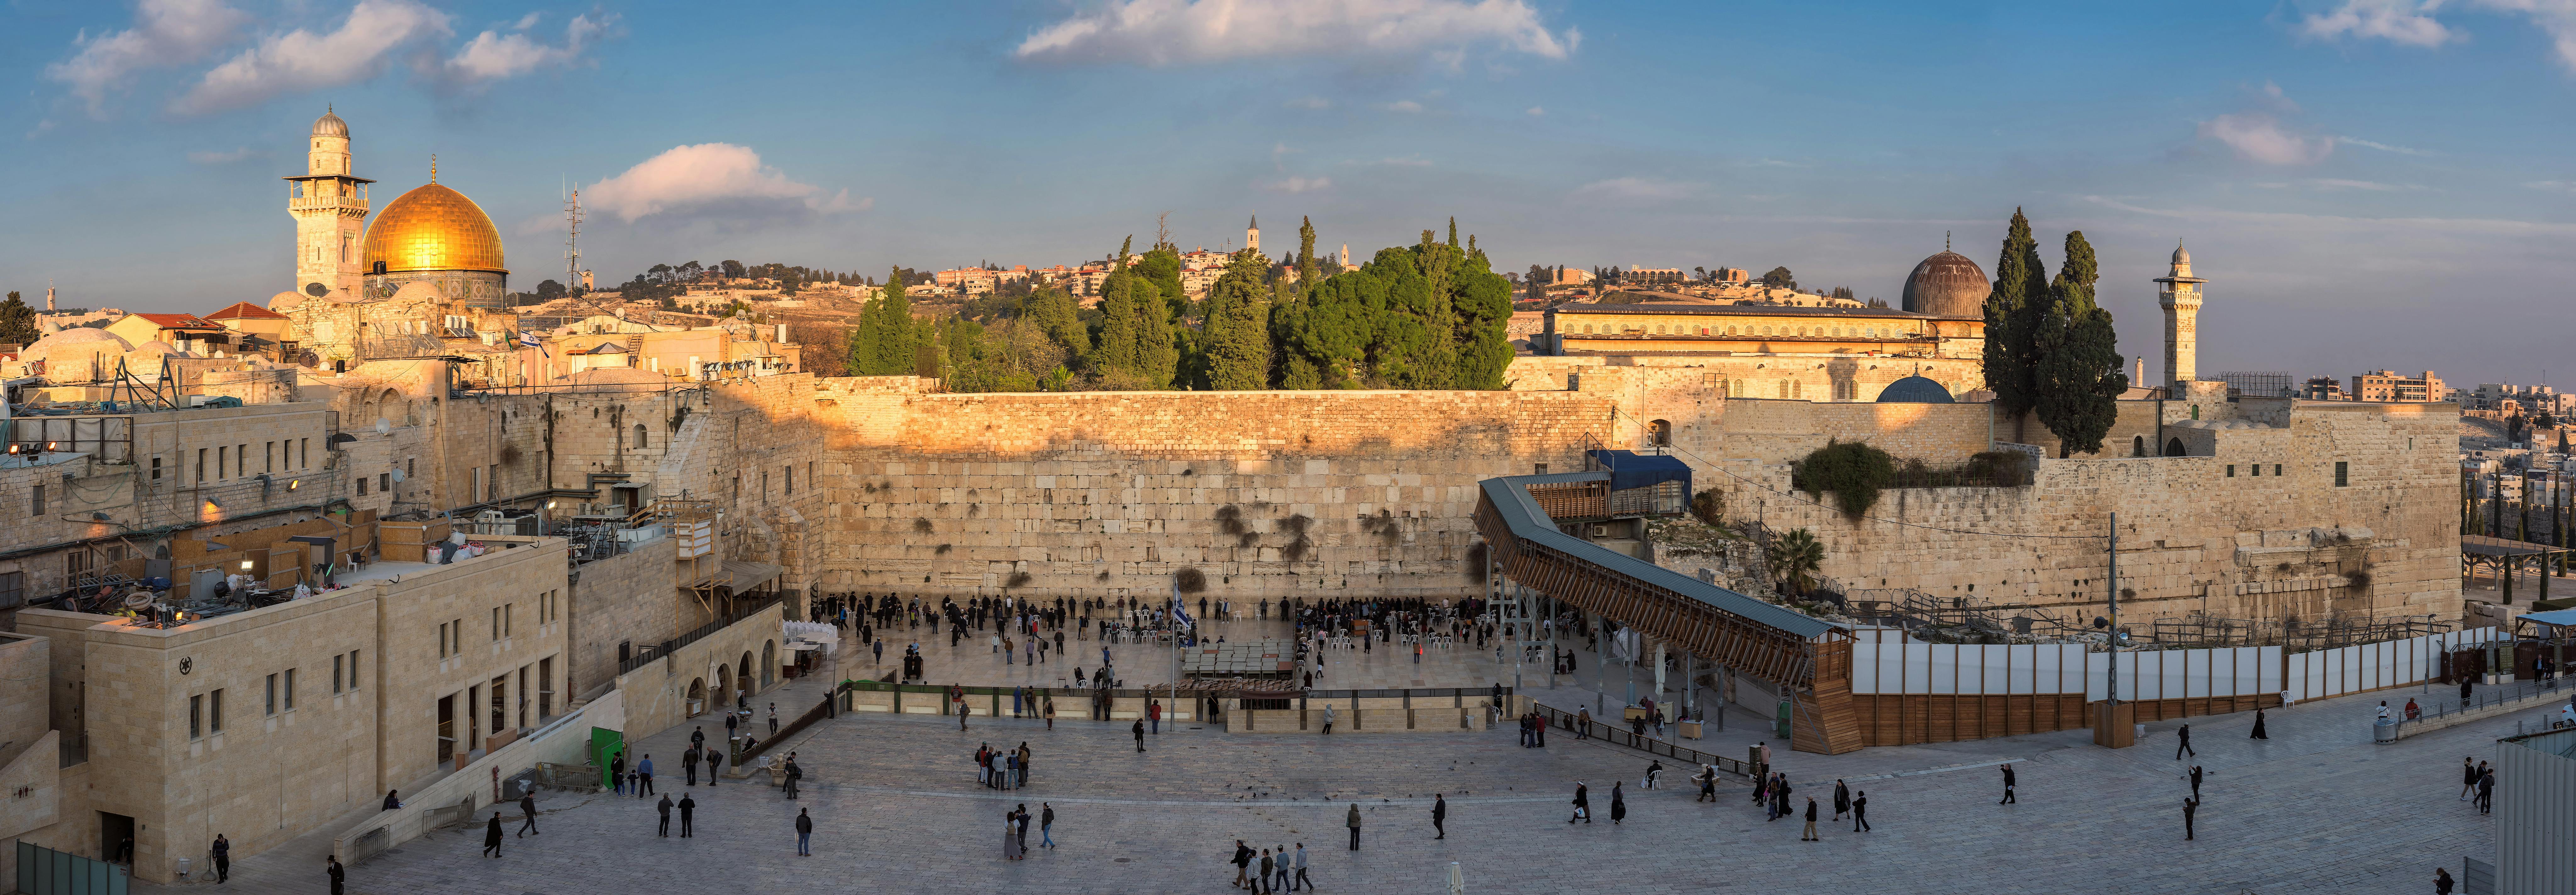 Excursión de día completo a la Jerusalén histórica y moderna desde Tel-Aviv